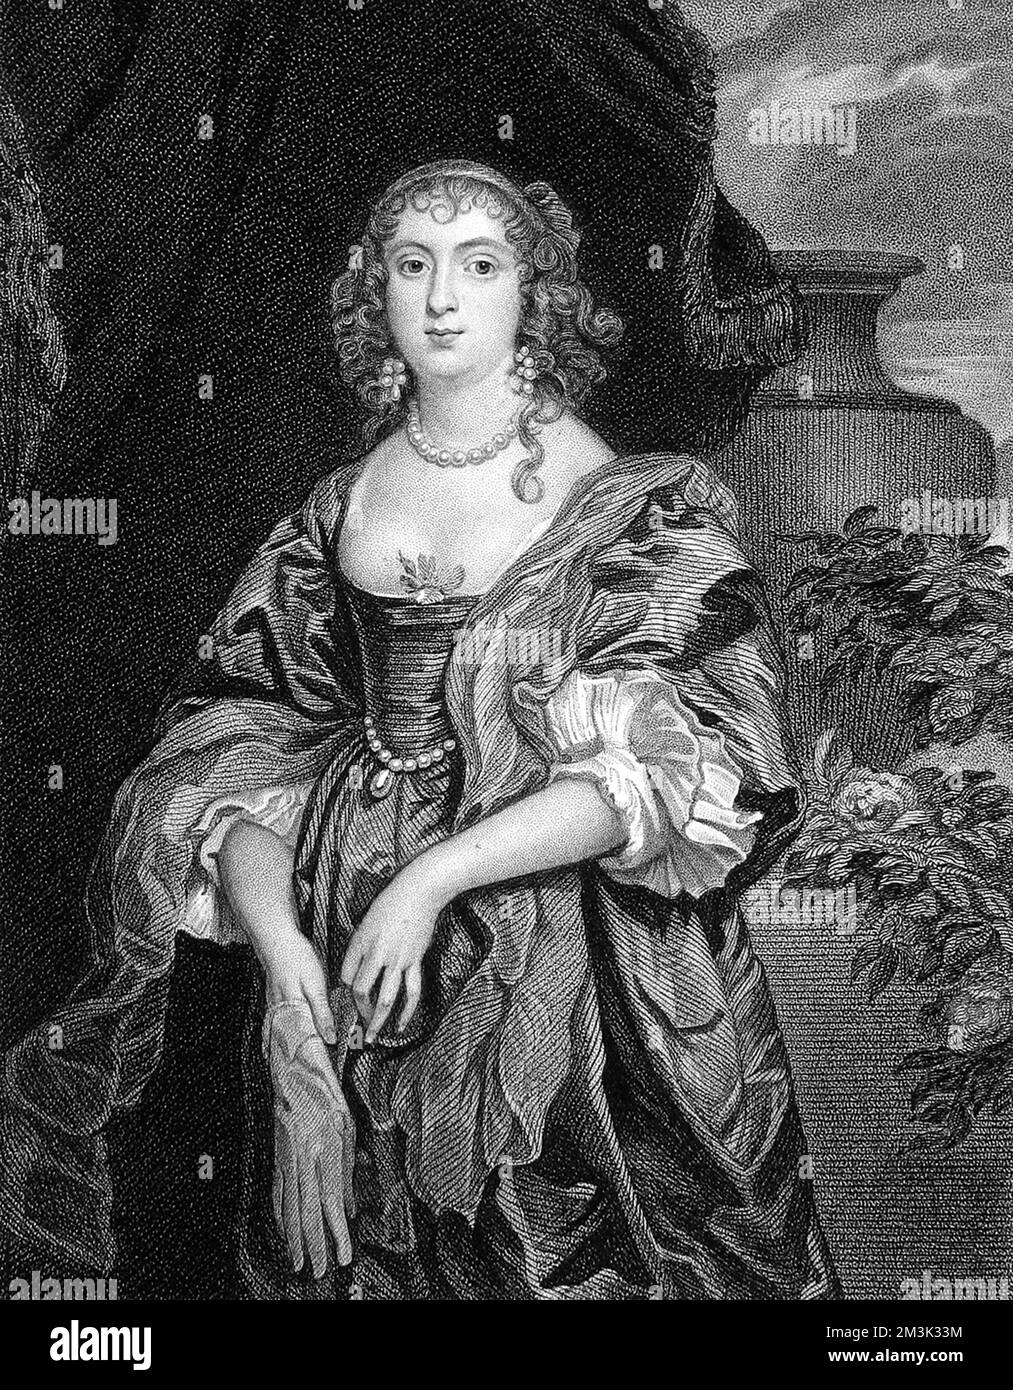 Anne Carre, contessa di Bedford (1615 - 1684), nobildonna inglese benestante, incisione dal ritratto di Vandyke, che è stato tenuto nella collezione del conte di Egremont. Data: c.1670 Foto Stock